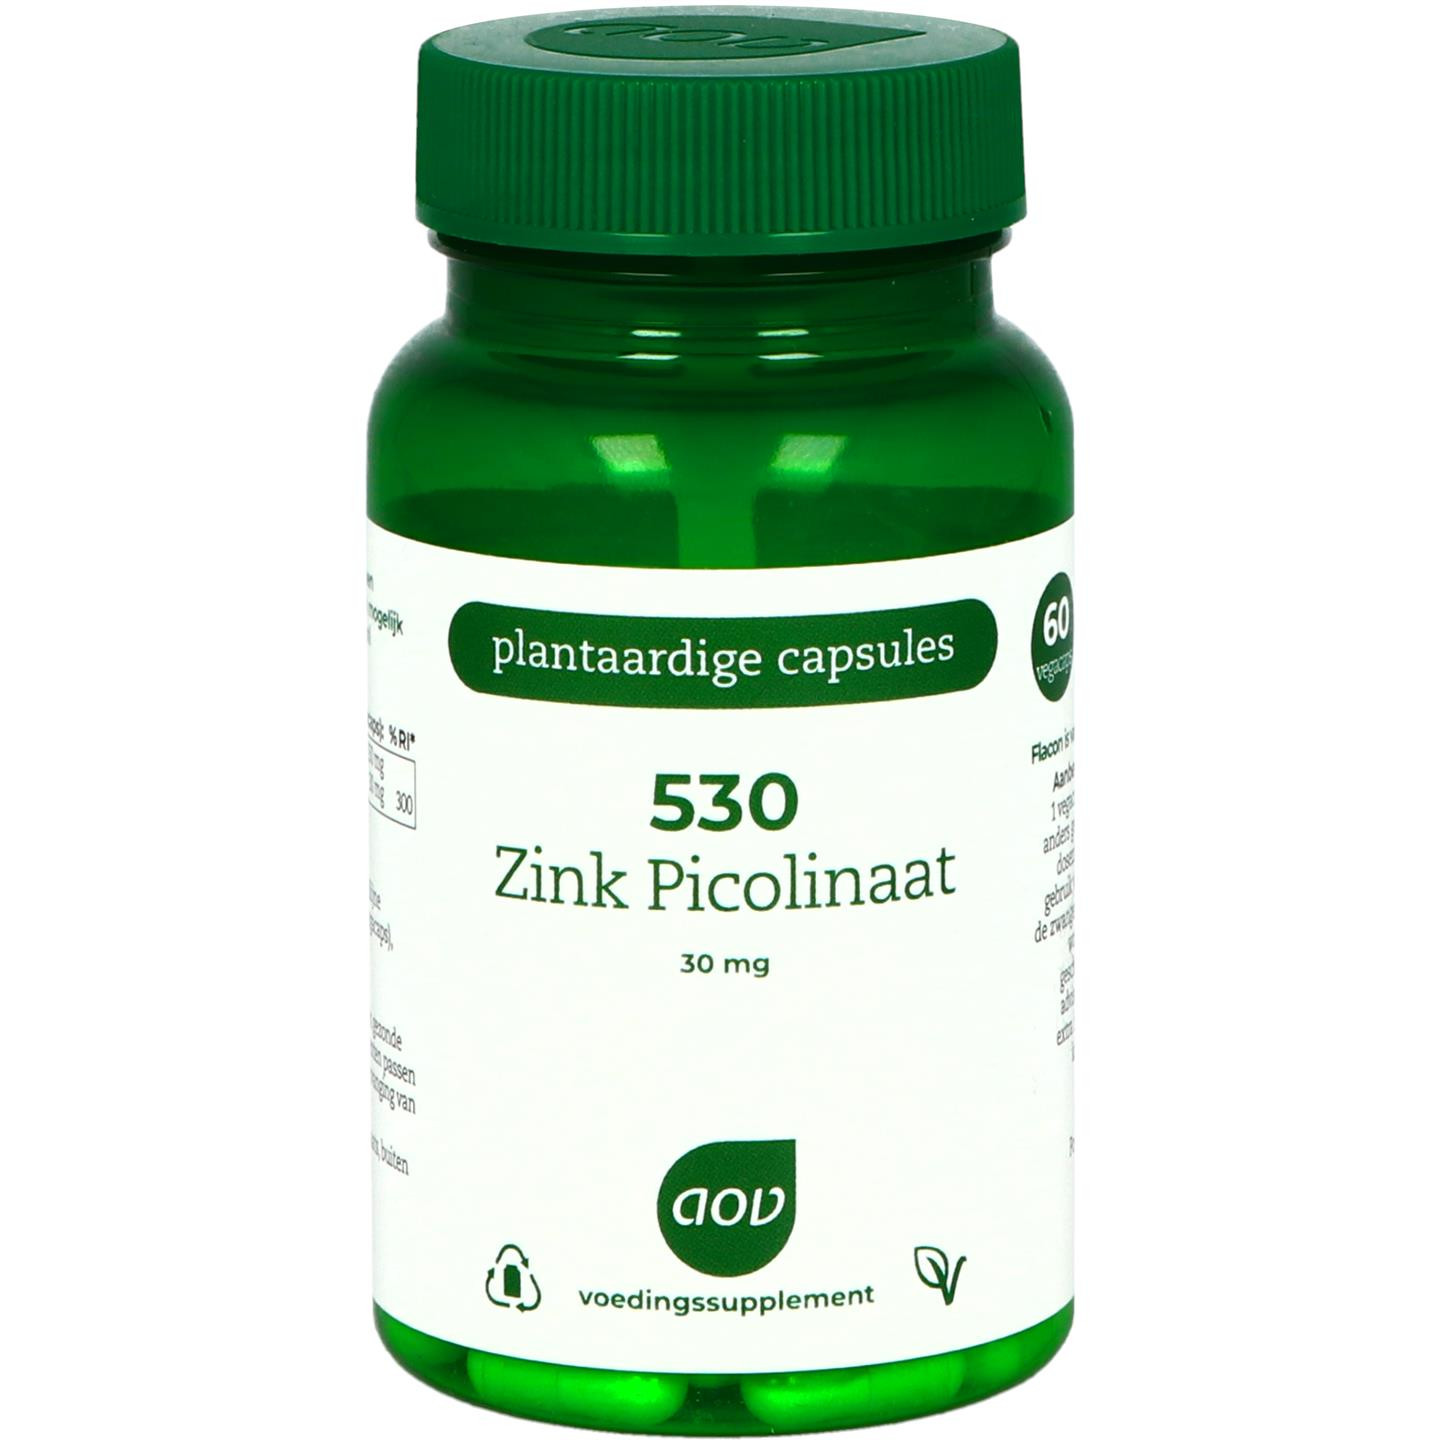 530 Zink Picolinaat 30 mg